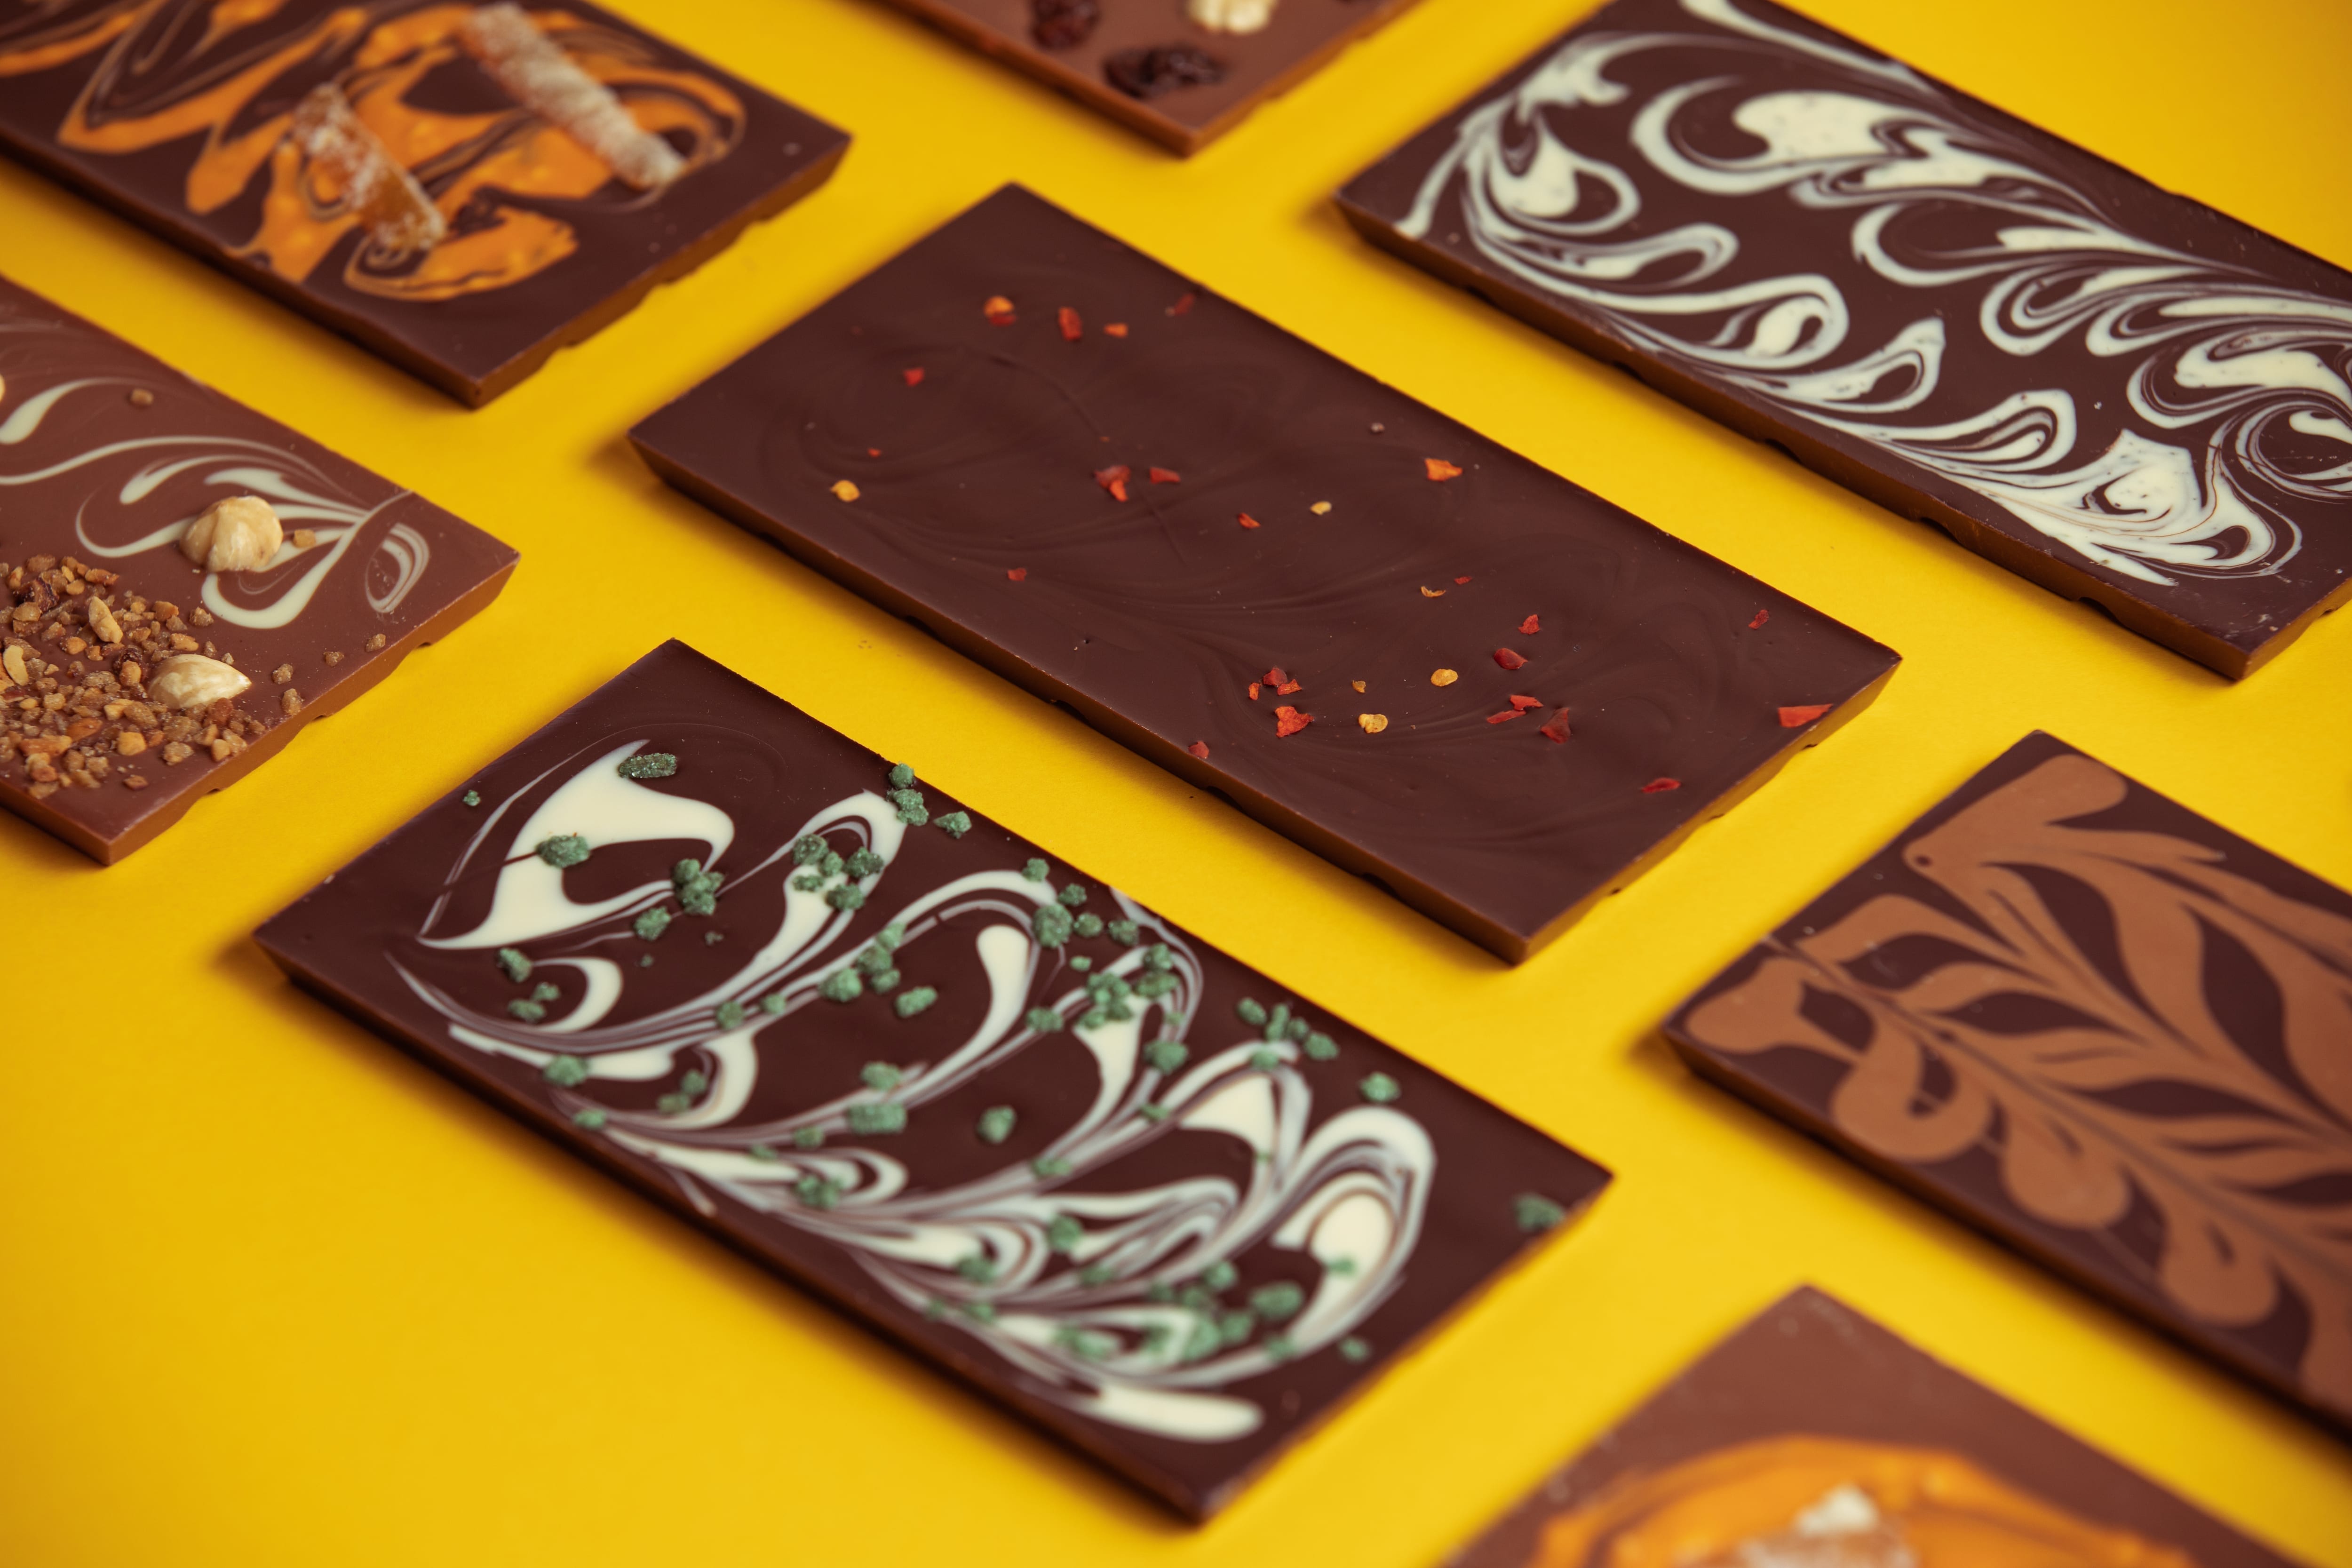 Orange & Almond 54% chocolate bars - Wilde Irish Chocolates